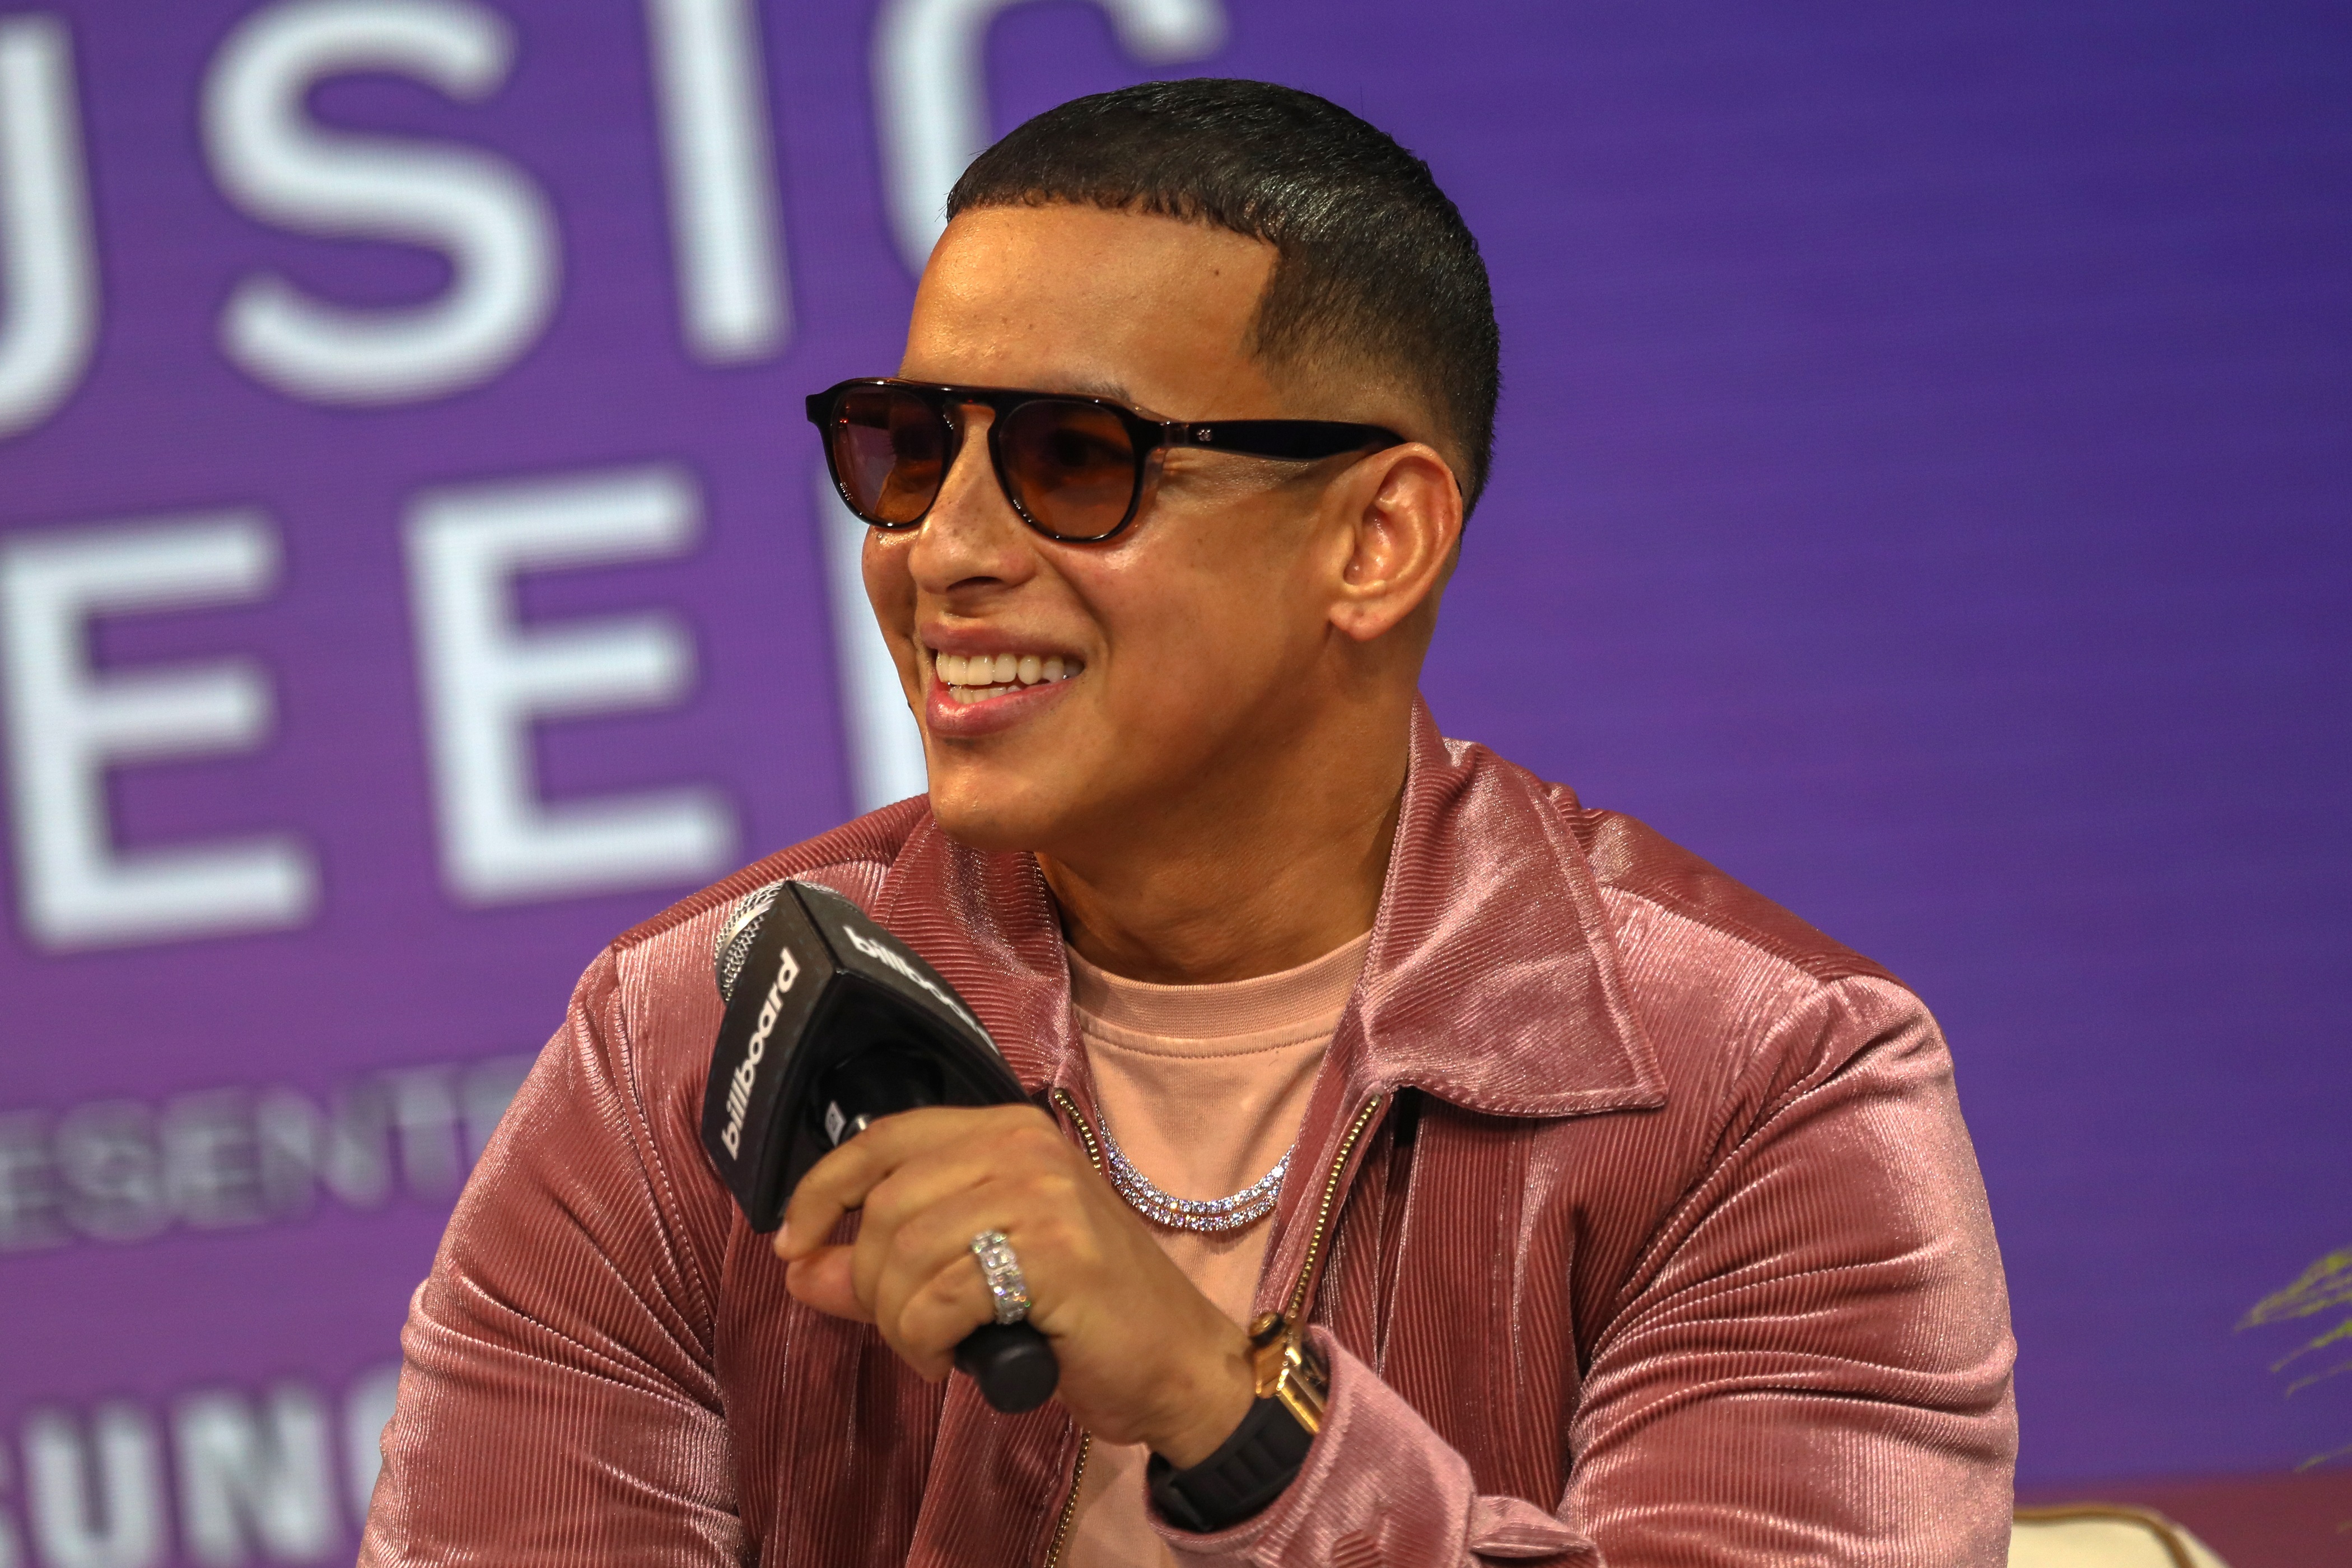 "Gasolina", del portorriqueño Daddy Yankee, fue uno de los primeros temas de reggaetón en conquistar Europa.